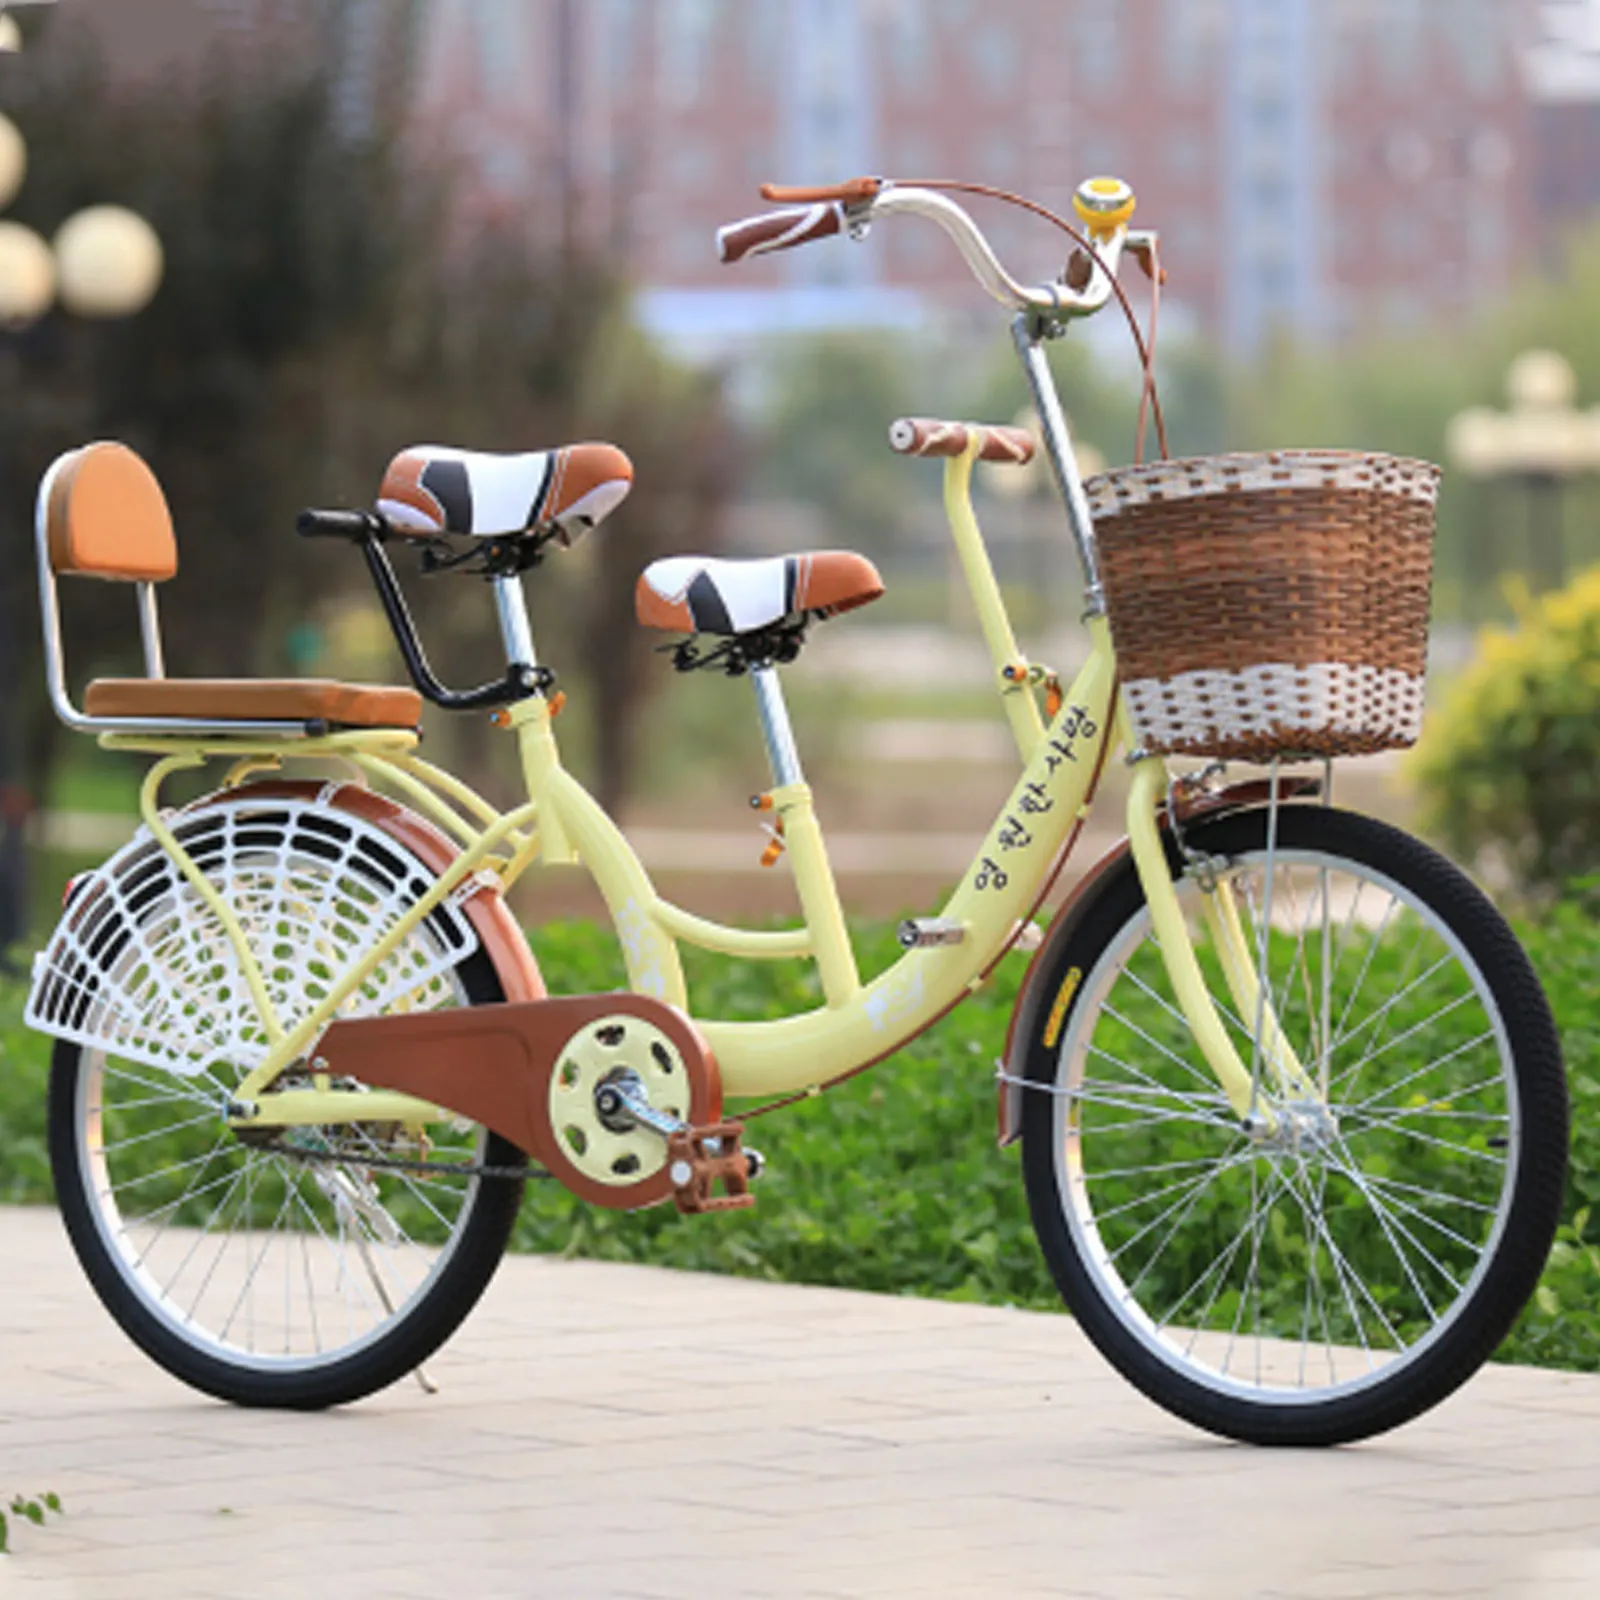 Aile yetişkin Tandem bisikletleri için yeni tasarım Tandem bisiklet 2 kişilik tur bisiklet 24 inç 2 kişi Tandem bisiklet satılık